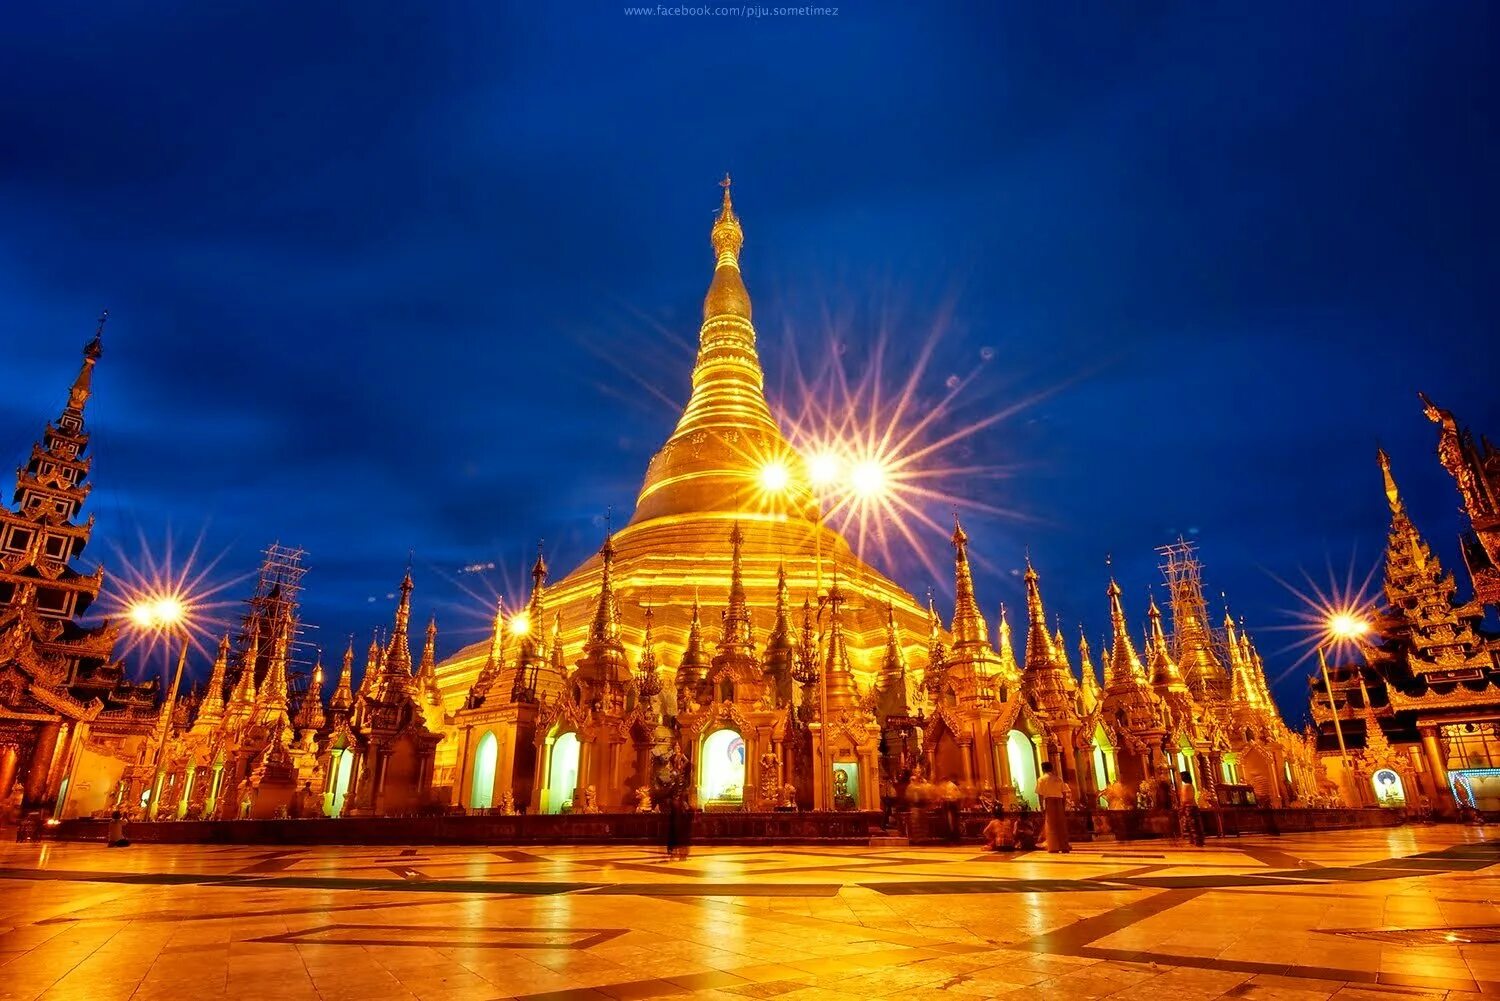 Шведагон Пайя. Пагода Шведагон. Янгон Мьянма. Пагода Шведагон фото. Достопримечательности каждых стран